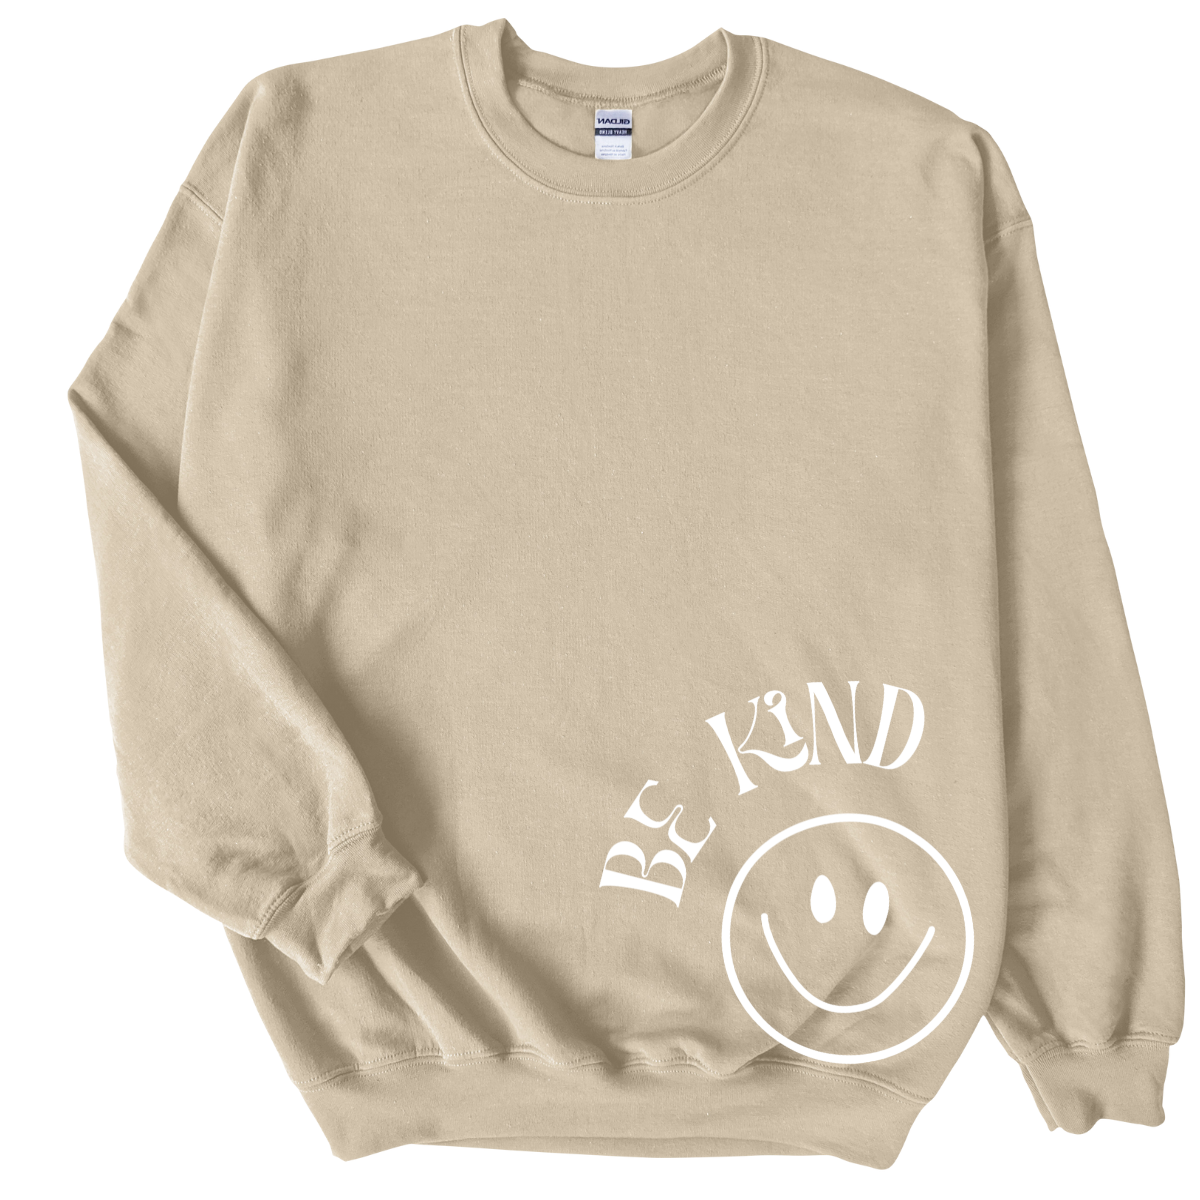 Be Kind Sweatshirts